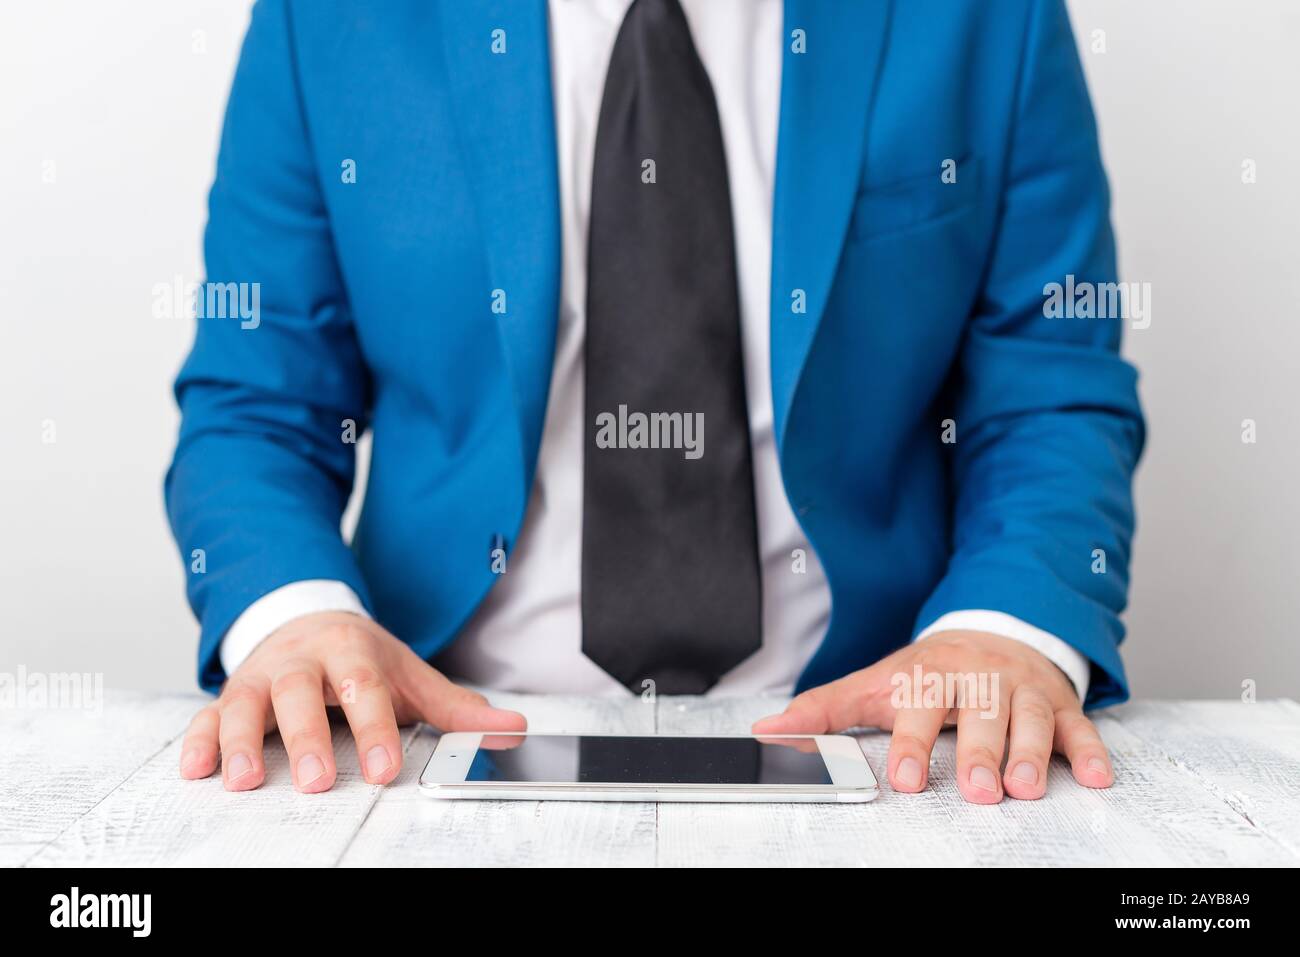 Uomo d'affari in suite blu con cravatta tiene il lap top in mano. Concetto di business con l'uomo in una suite e un lap top. Foto Stock